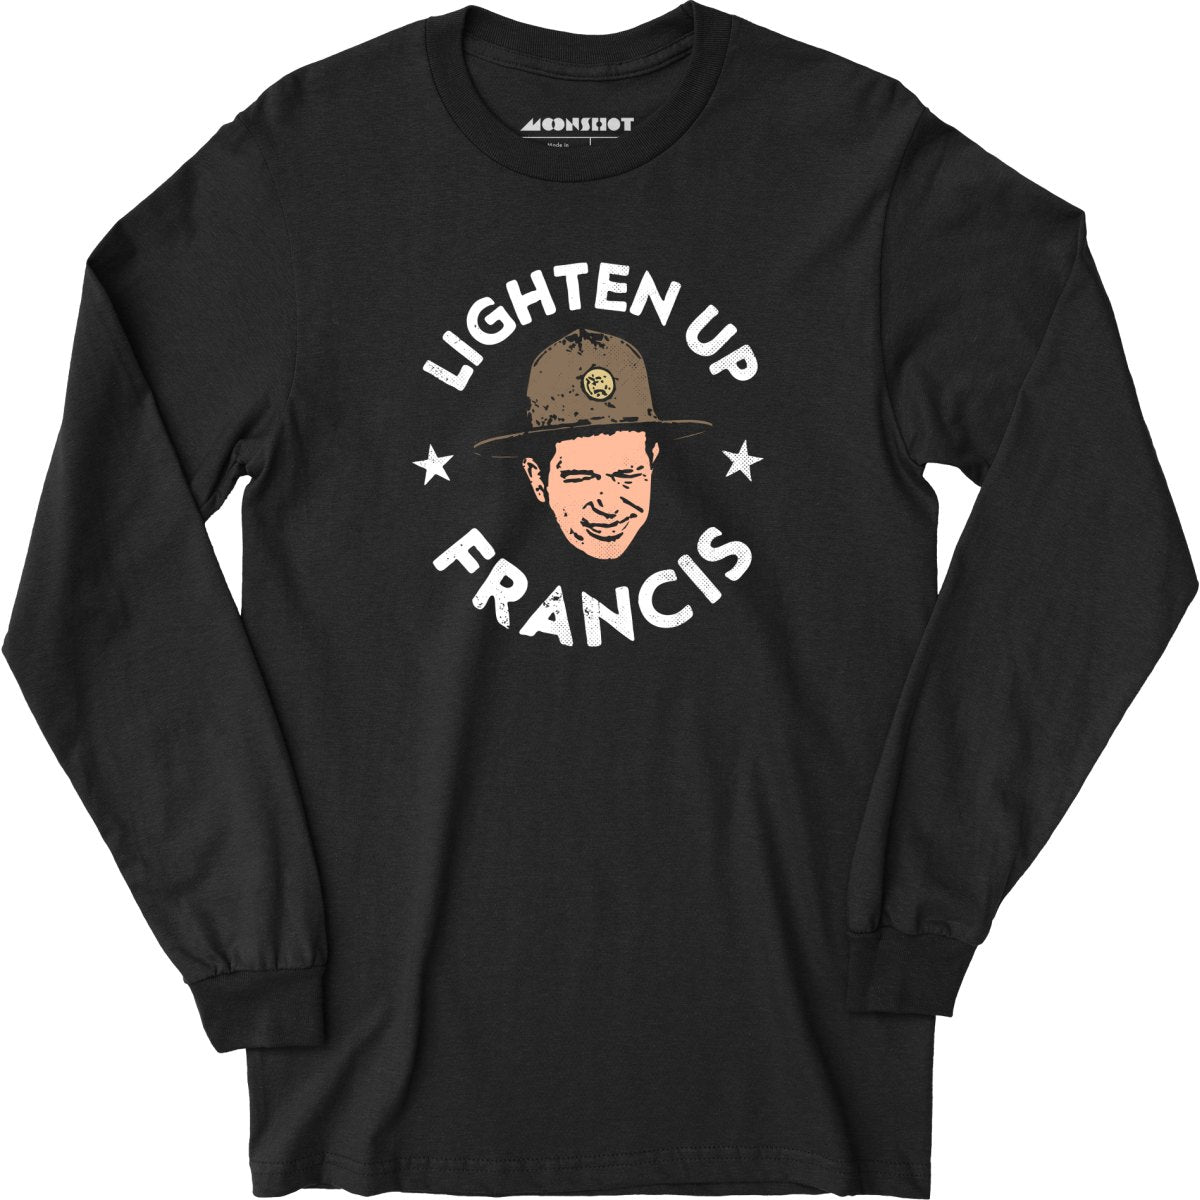 Lighten Up Francis - Long Sleeve T-Shirt